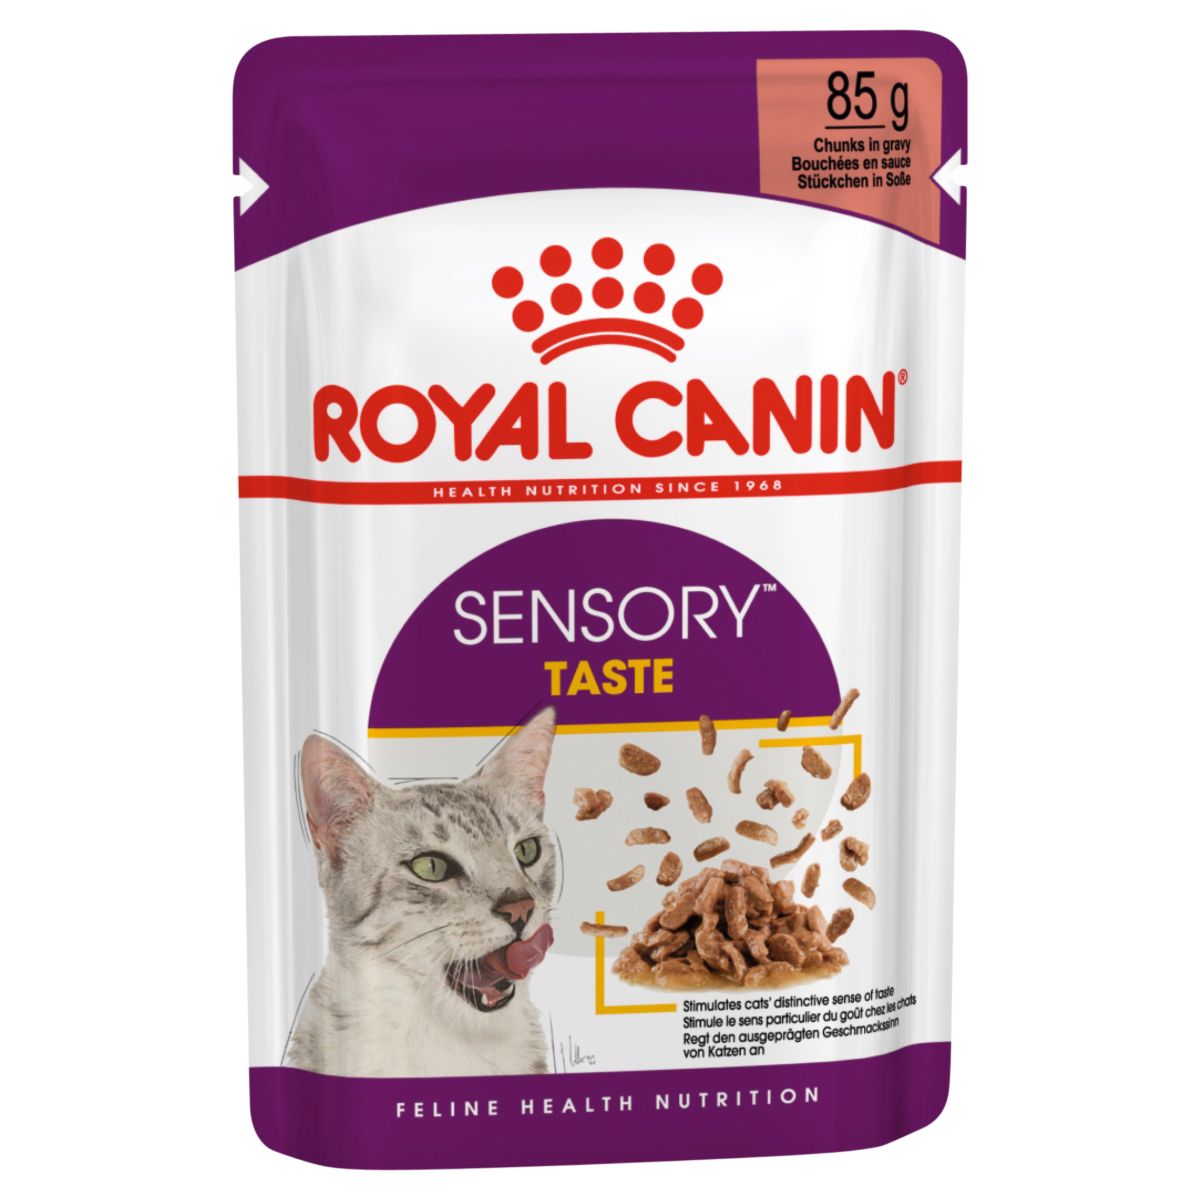 Royal Canin Sensory Taste Chunks in Gravy Wet Cat Food 85G